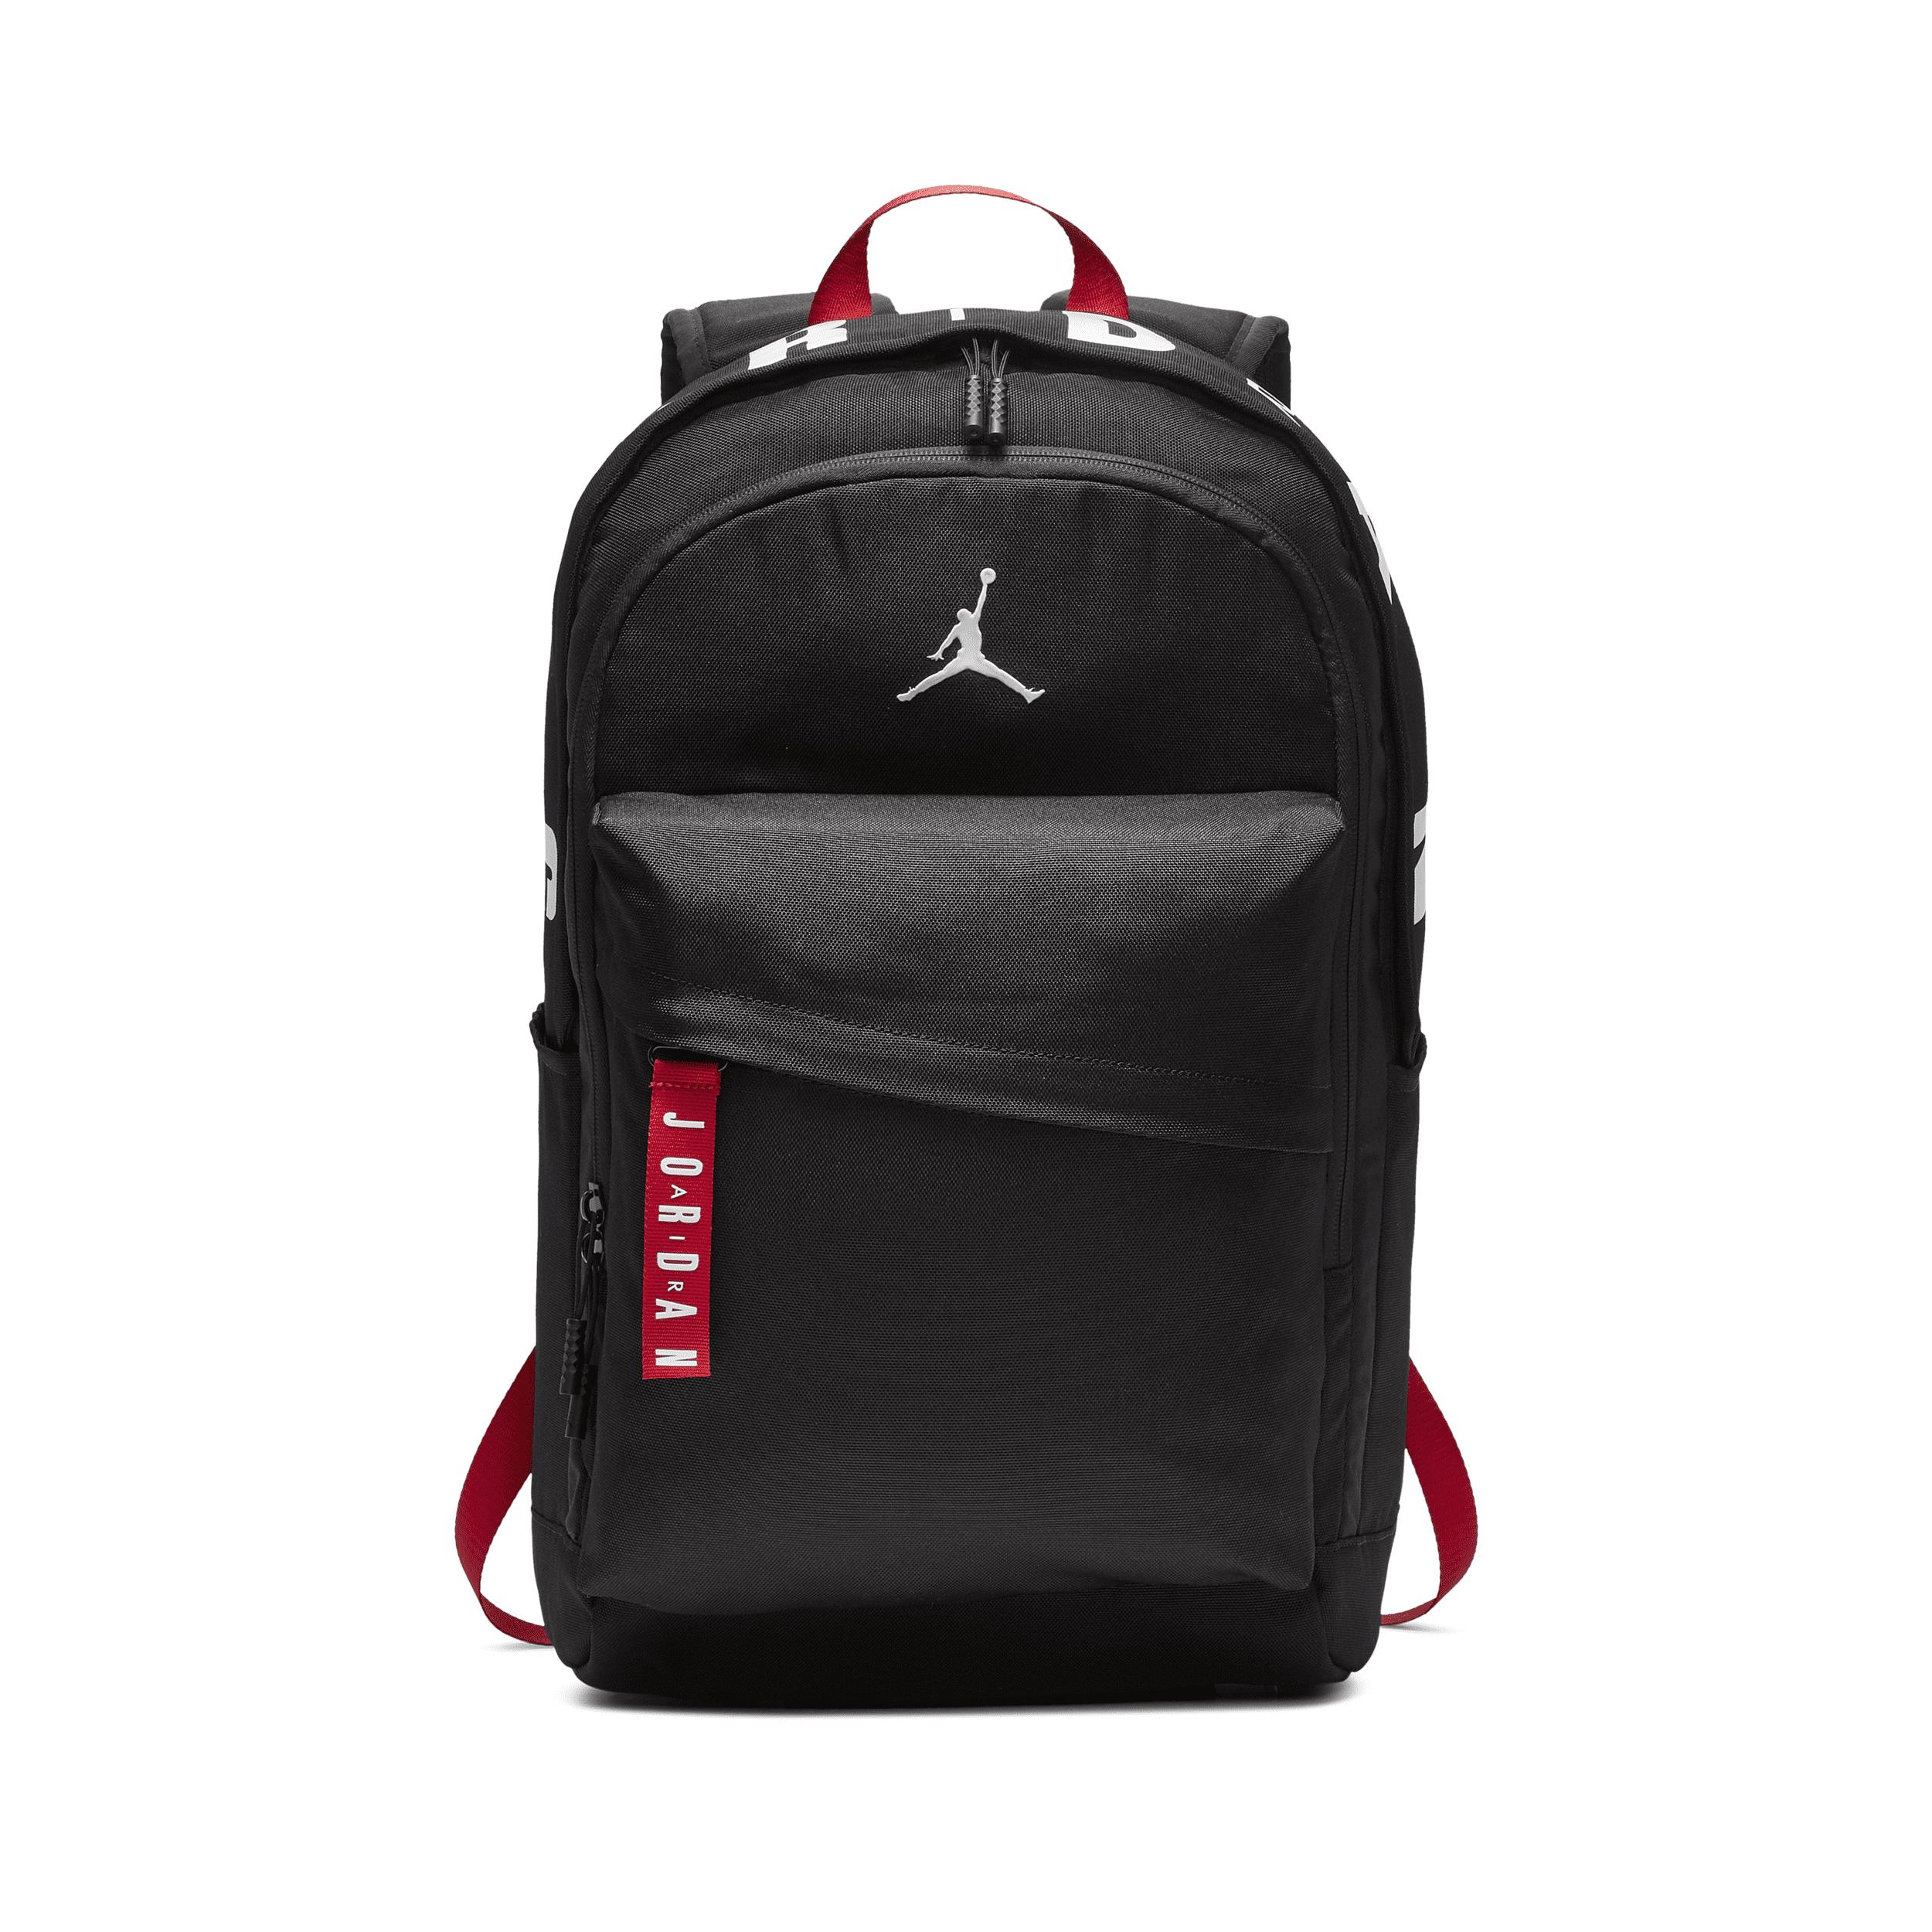 cool jordan backpack